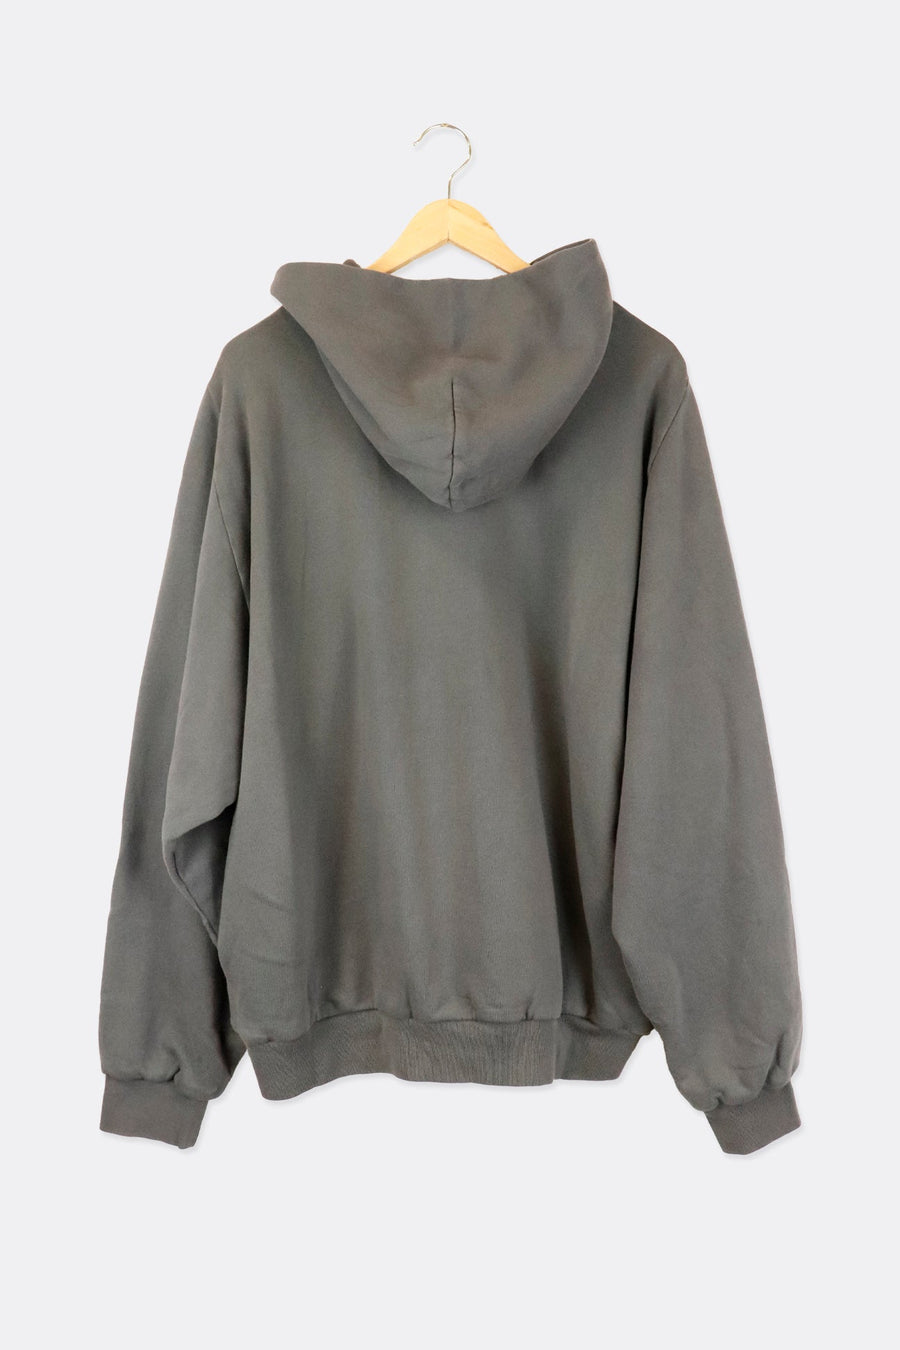 Yeezy X Gap Zip Sweatshirt / Hoodie - Unreleased Season - All Sizes + All Colors Re-Stock